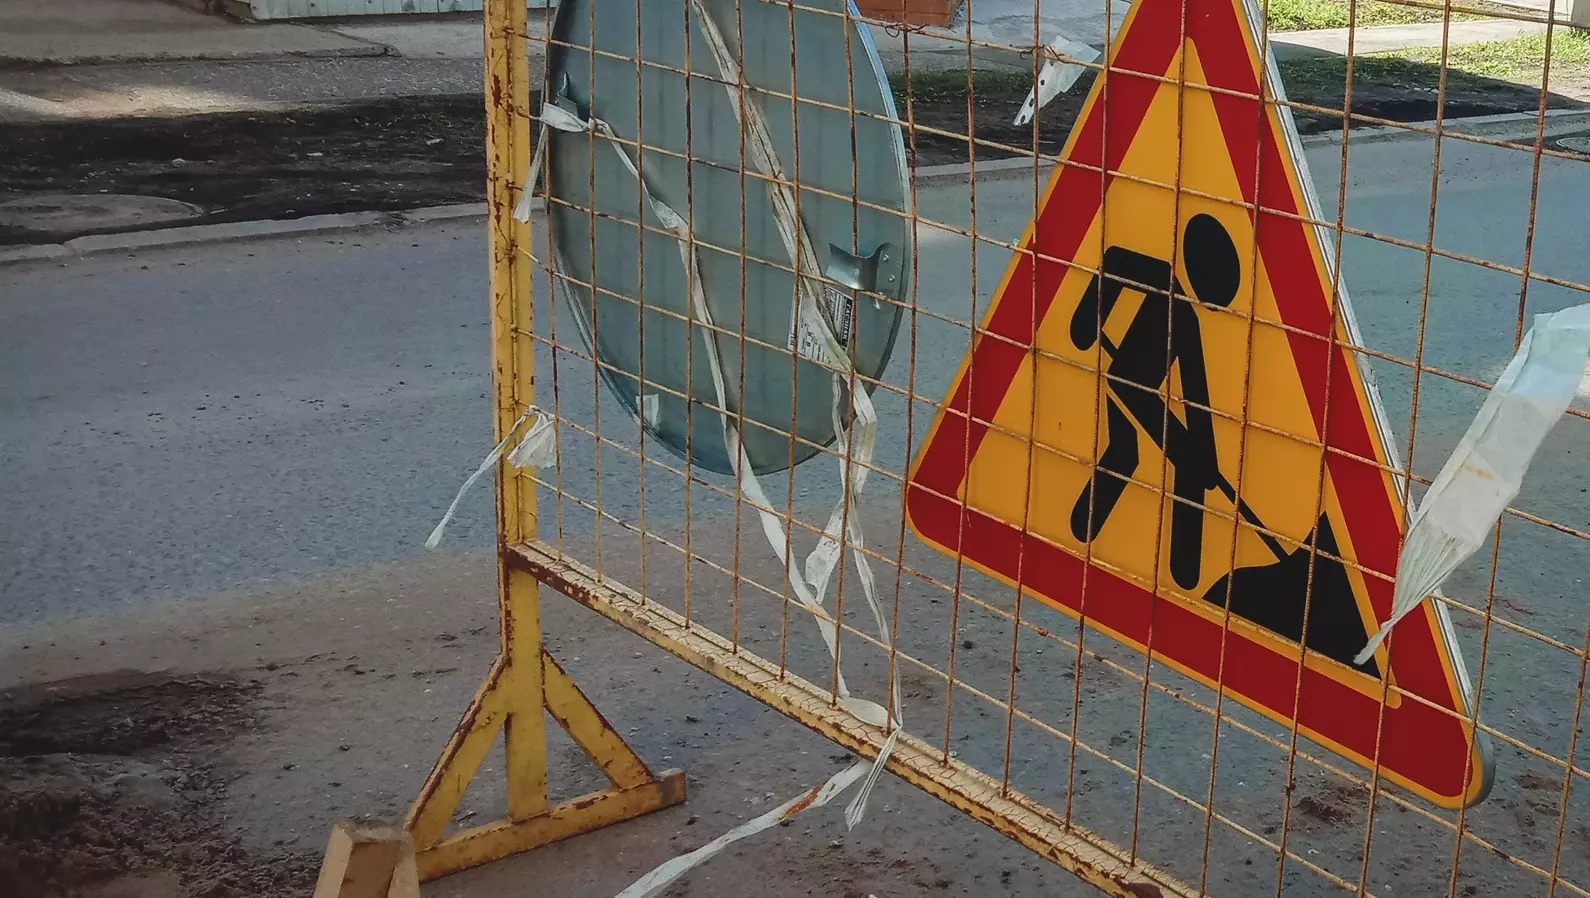 Из-за провала асфальта в центре Ижевска закрыли движение транспорта